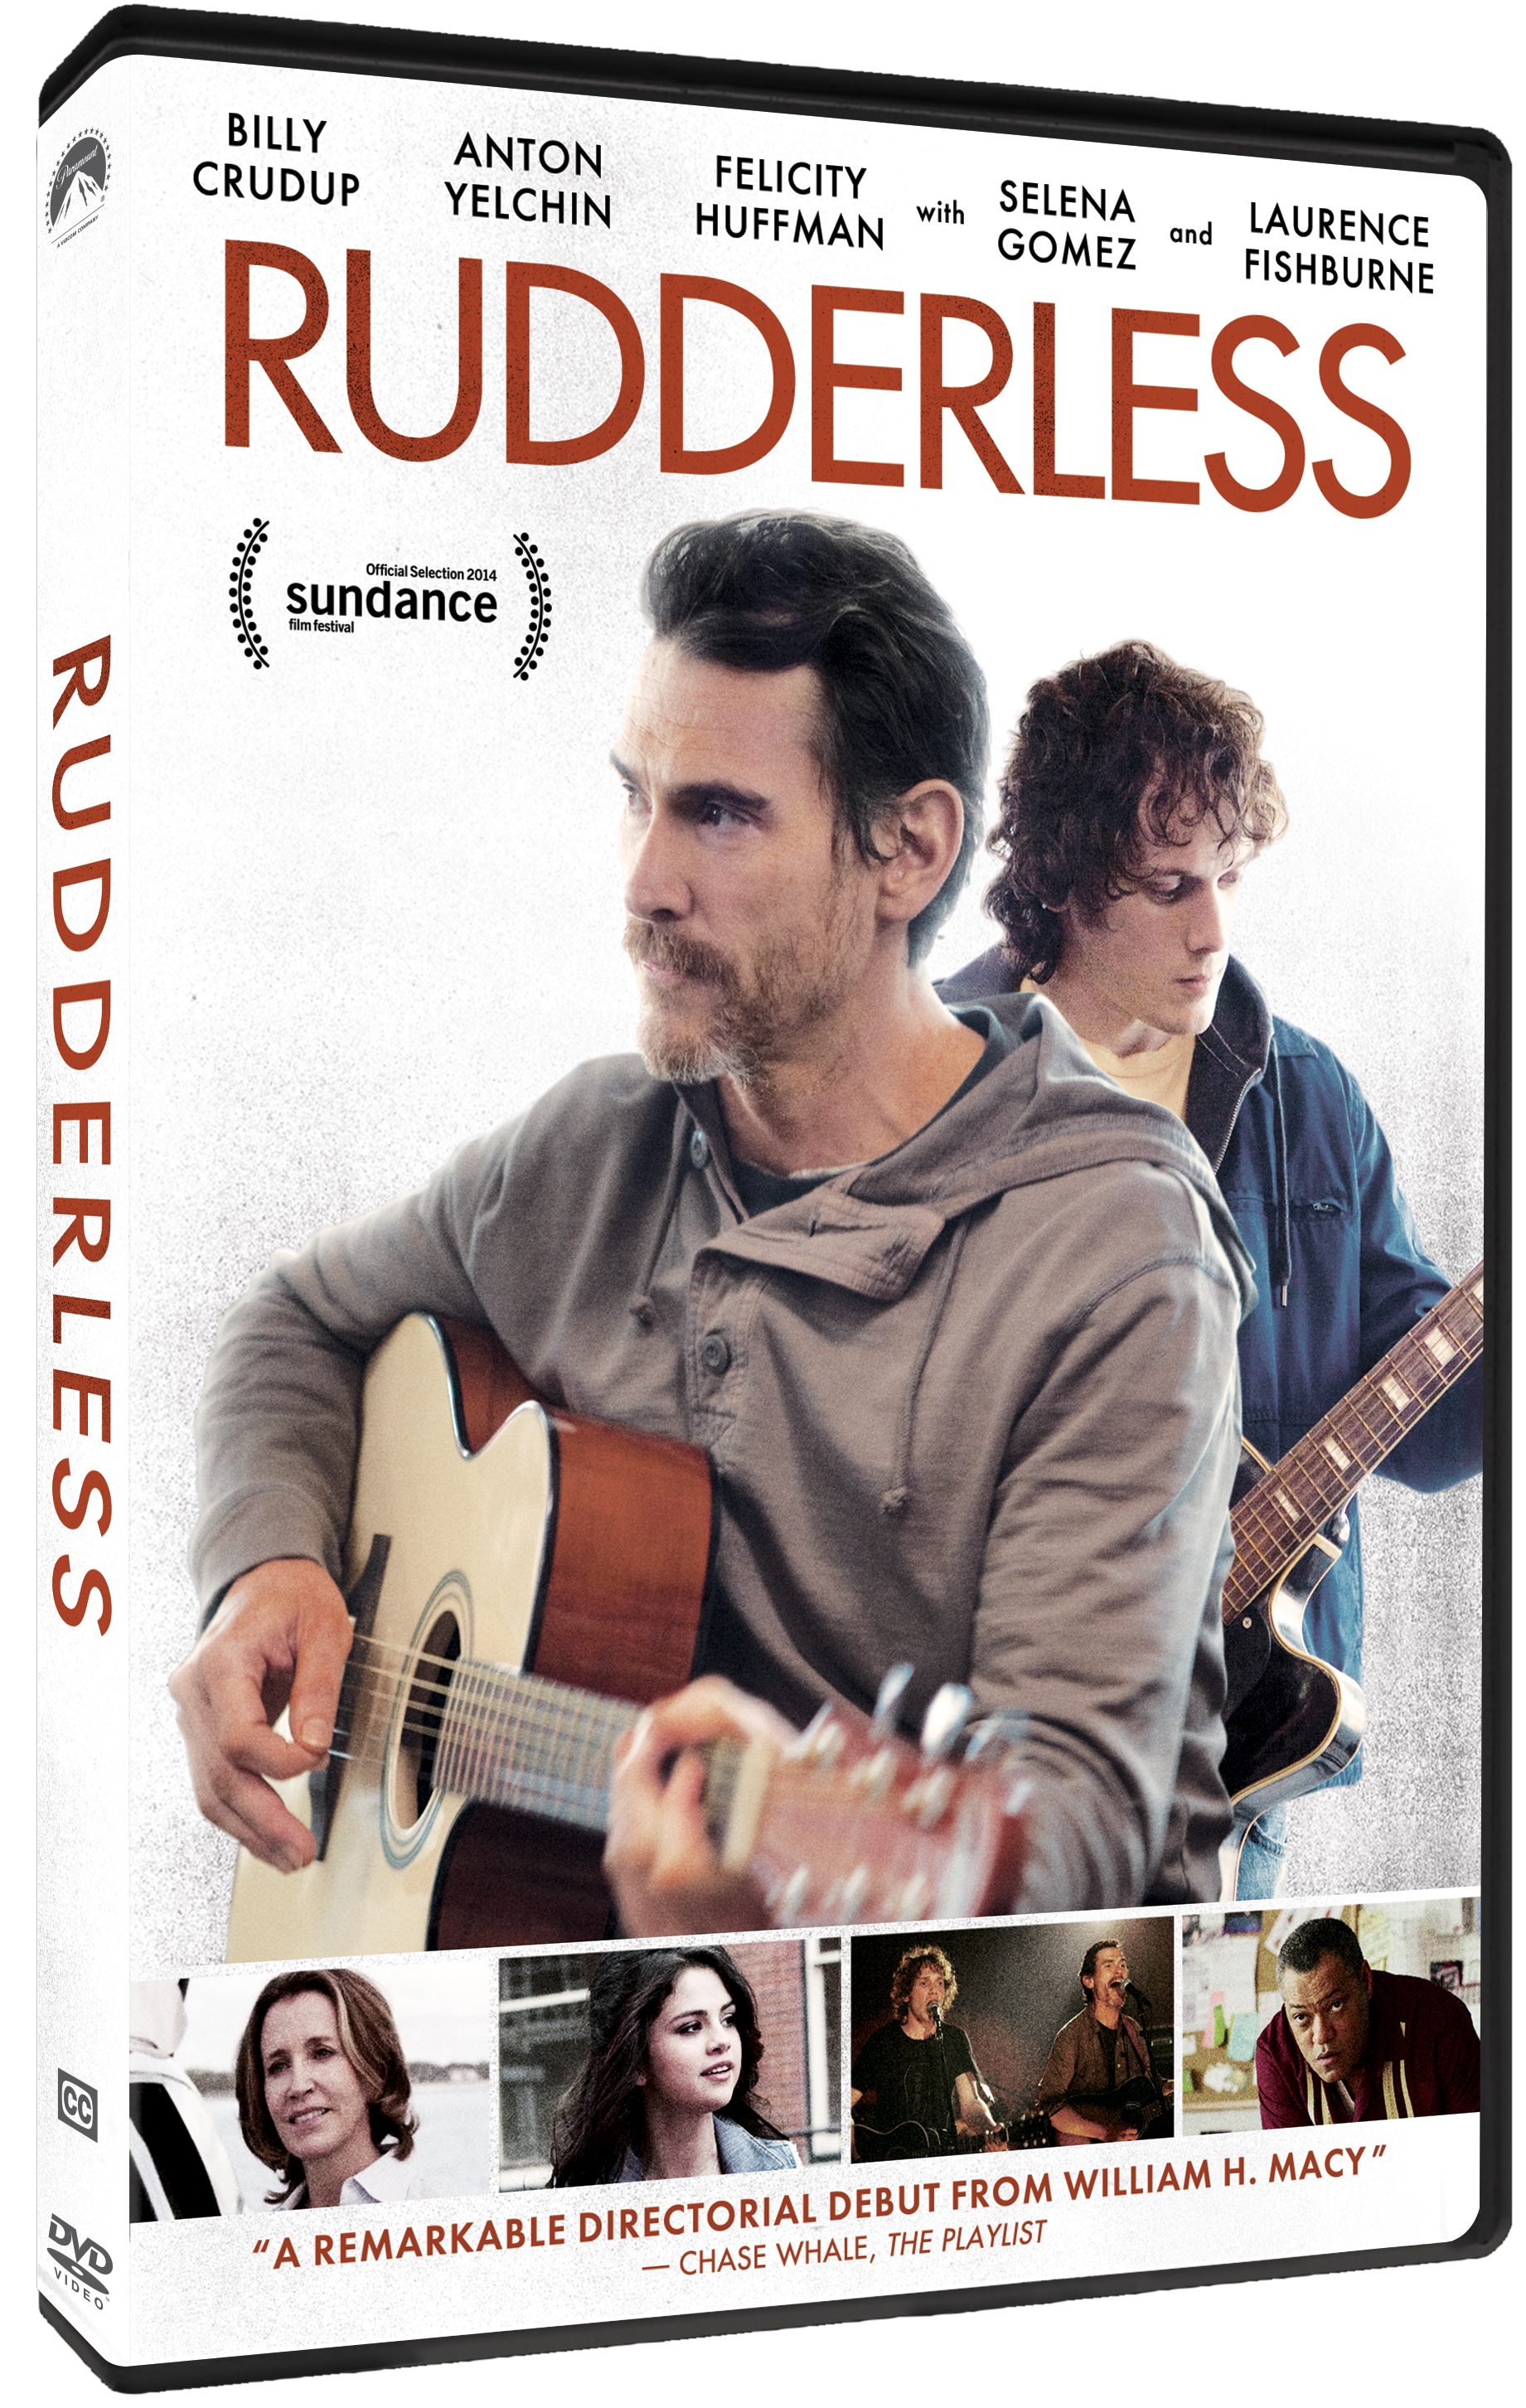 Rudderless DVD Review